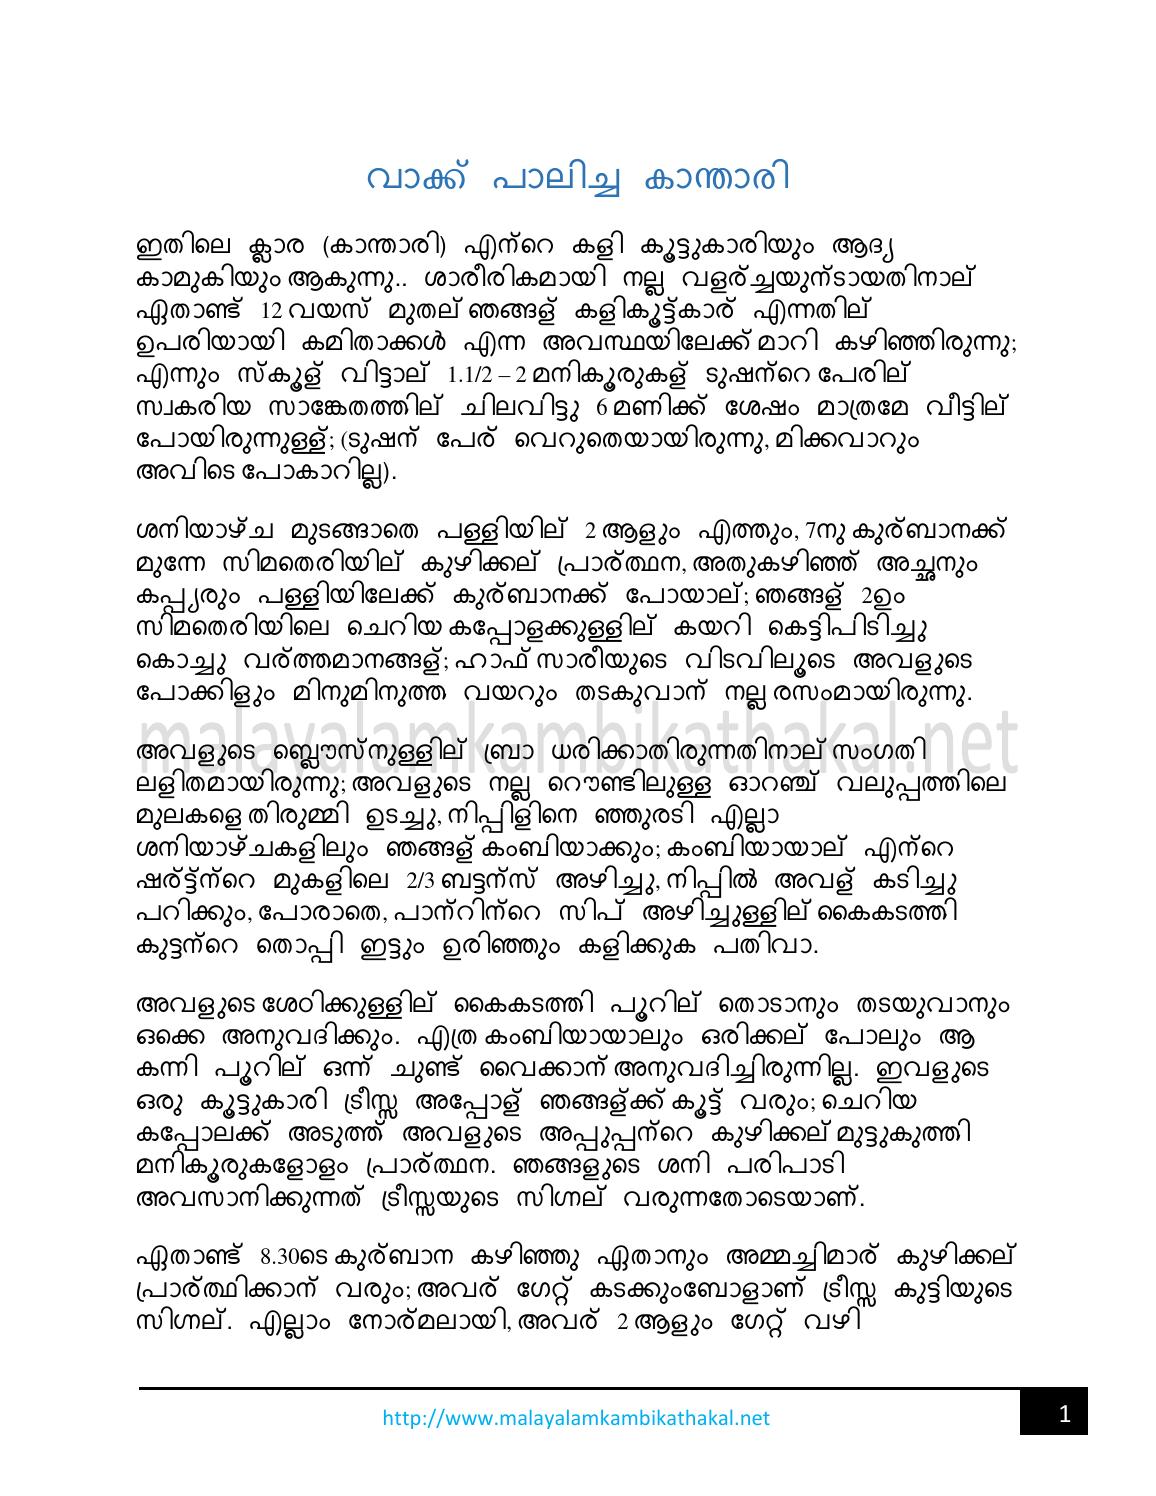 malayalam kambi kathakal pdf free download 2014